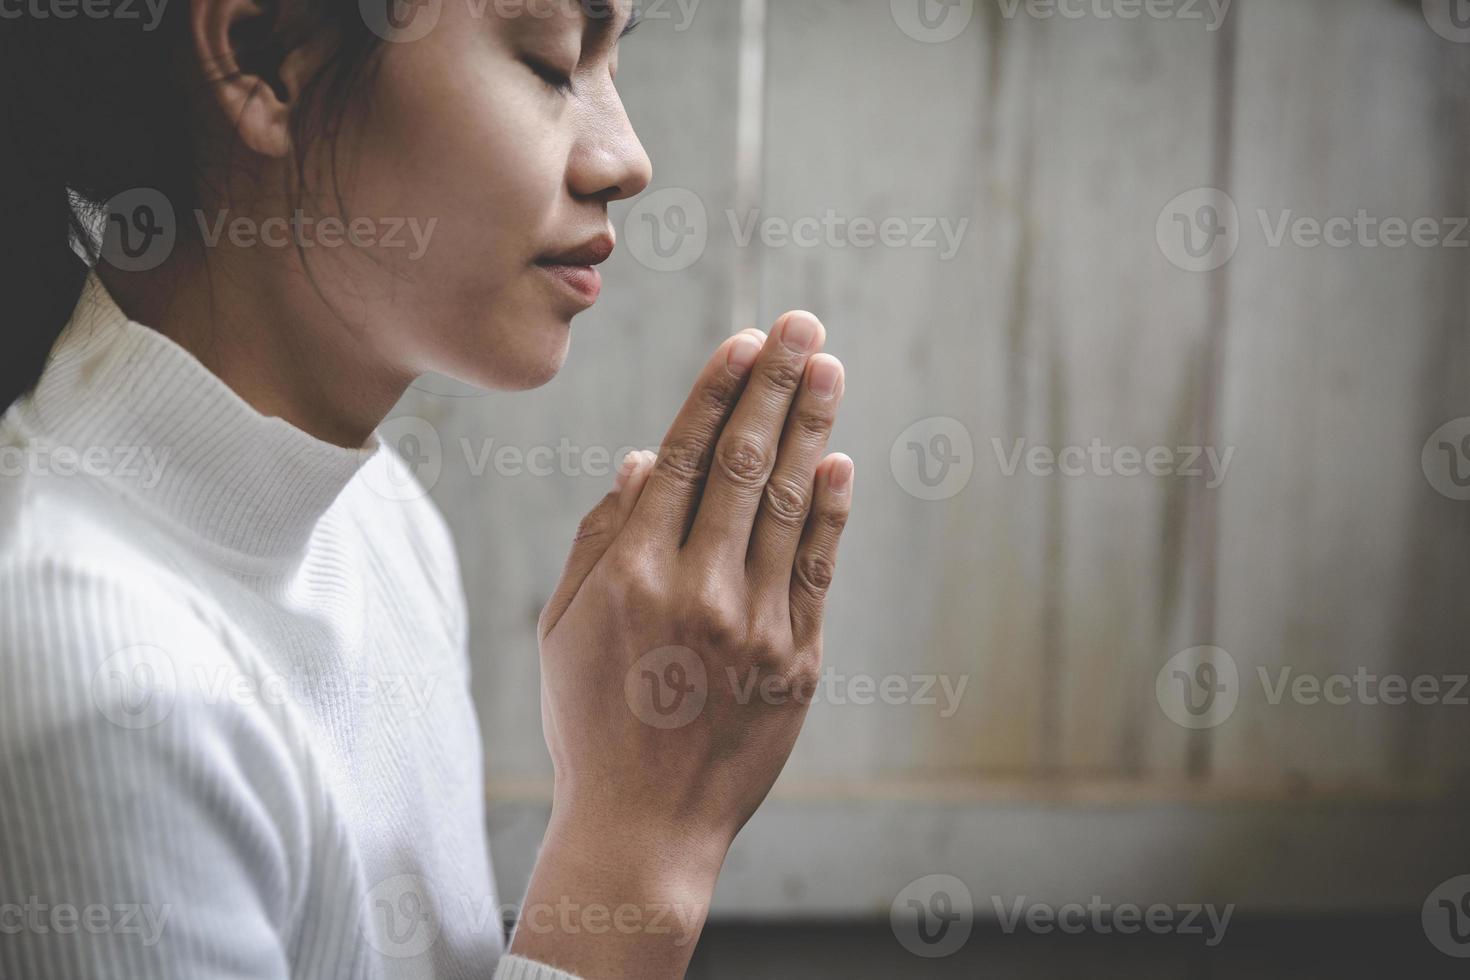 preste respeito, mulher rezando as mãos com fé na religião. gesto de mãos namaste ou namaskar, posição de oração. foto